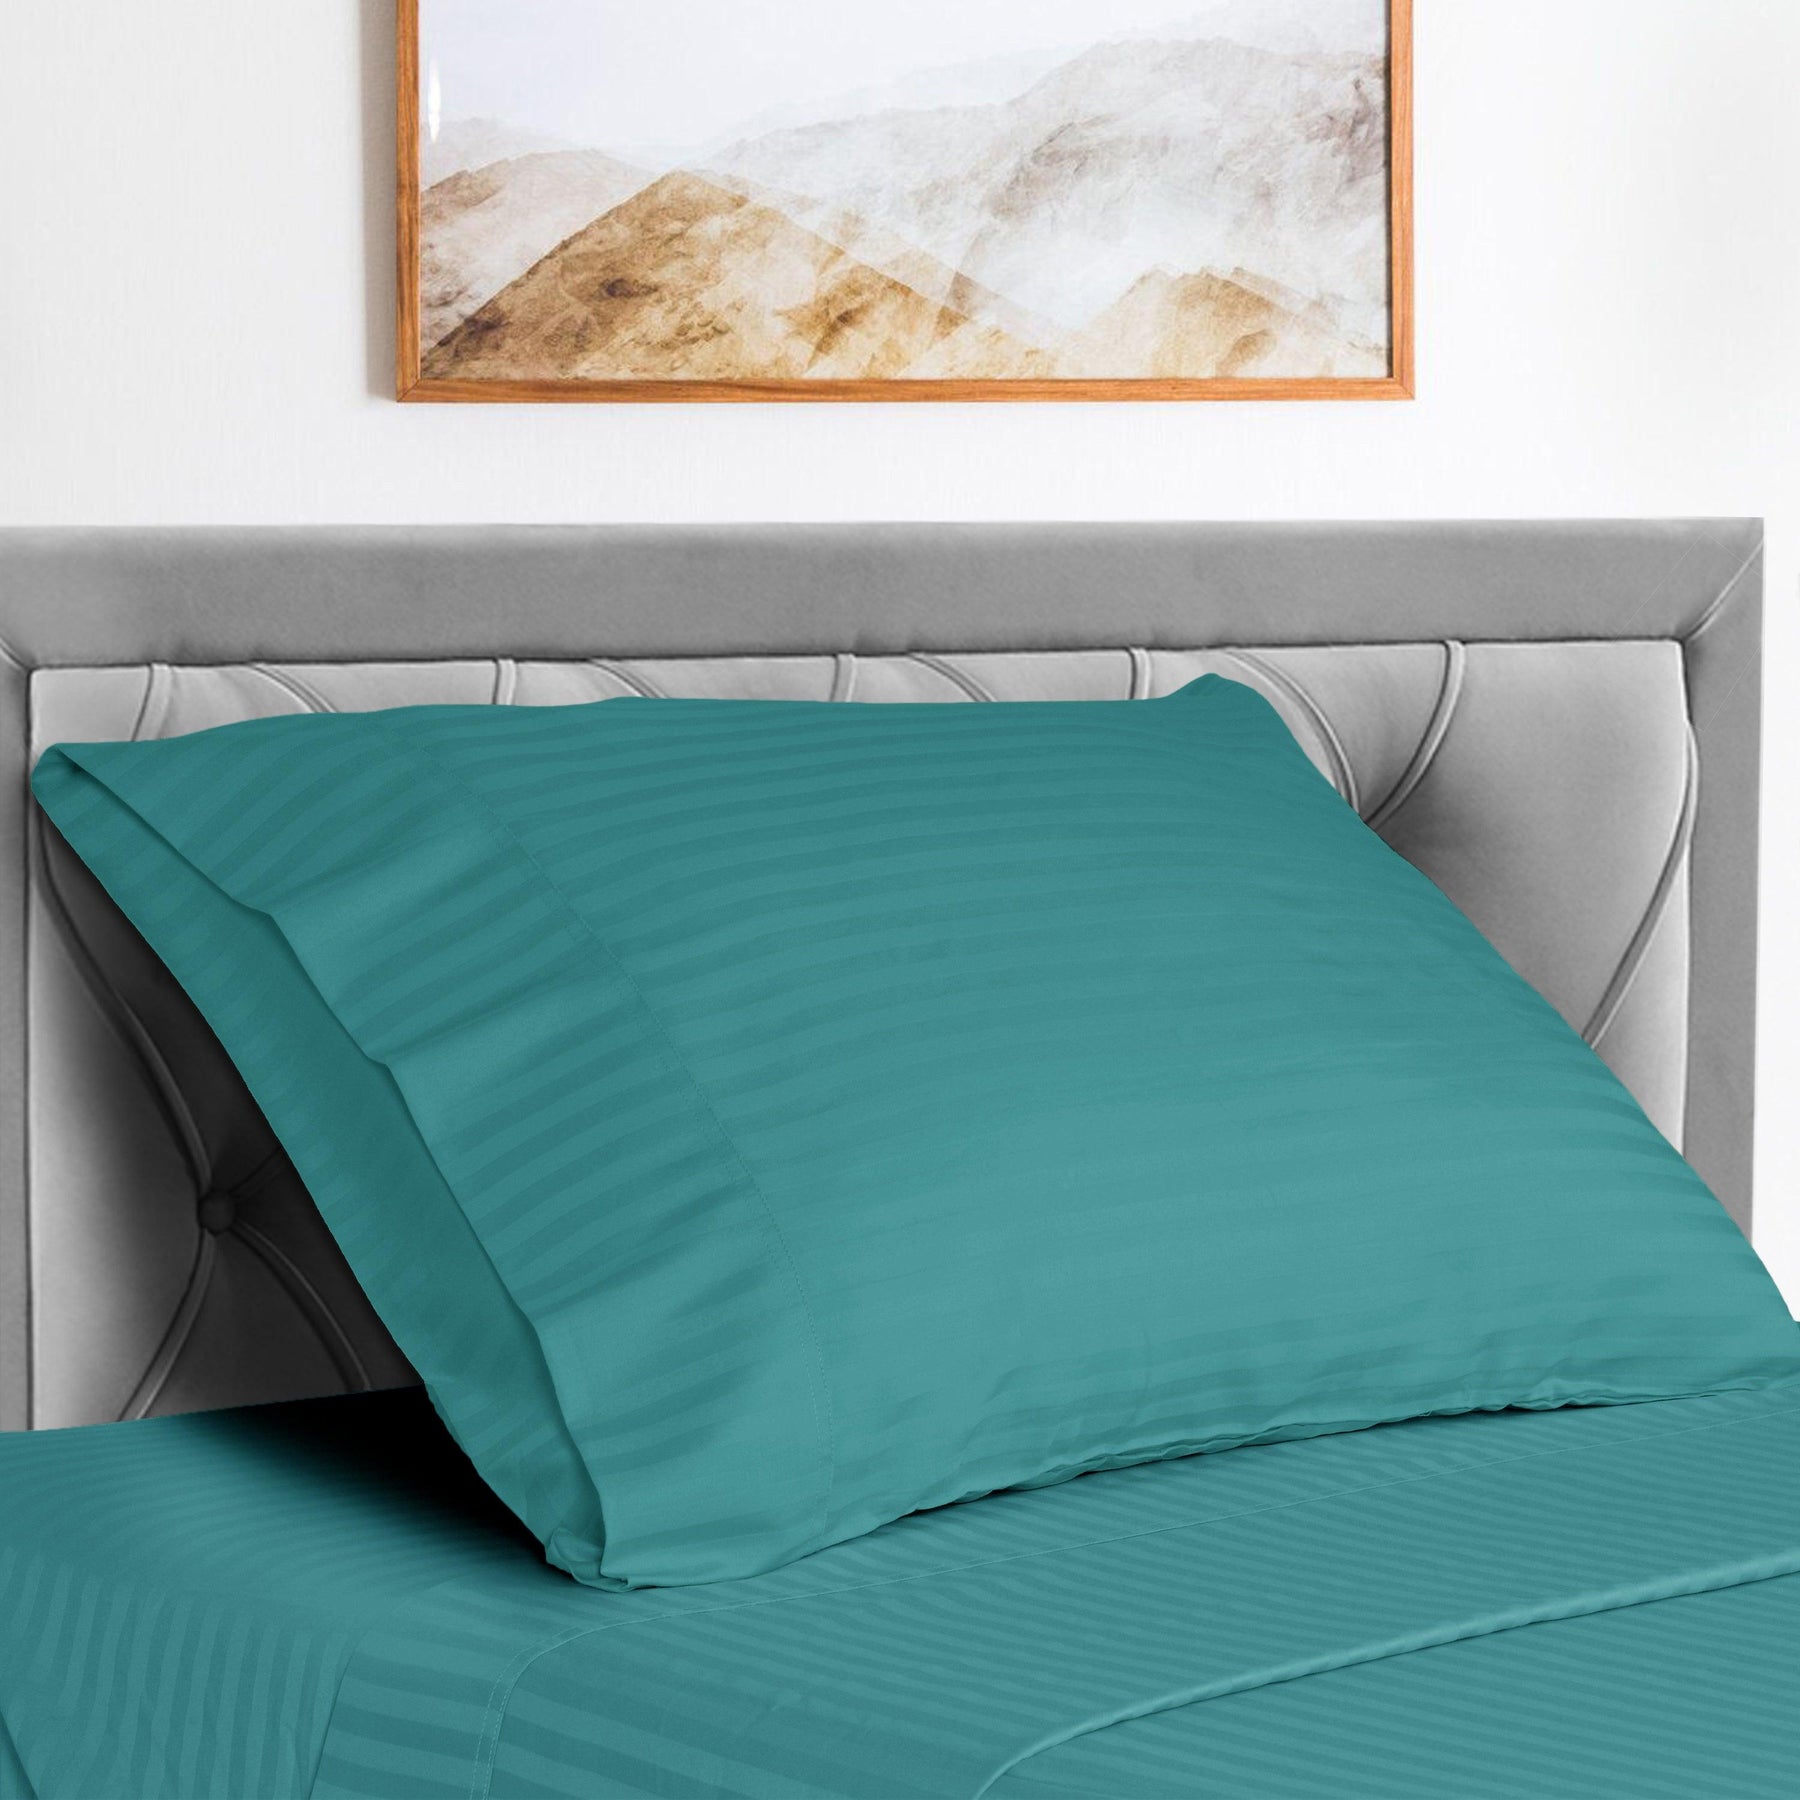  Superior Microfiber Wrinkle Resistant and Breathable Stripe Deep Pocket Bed Sheet Set - Teal